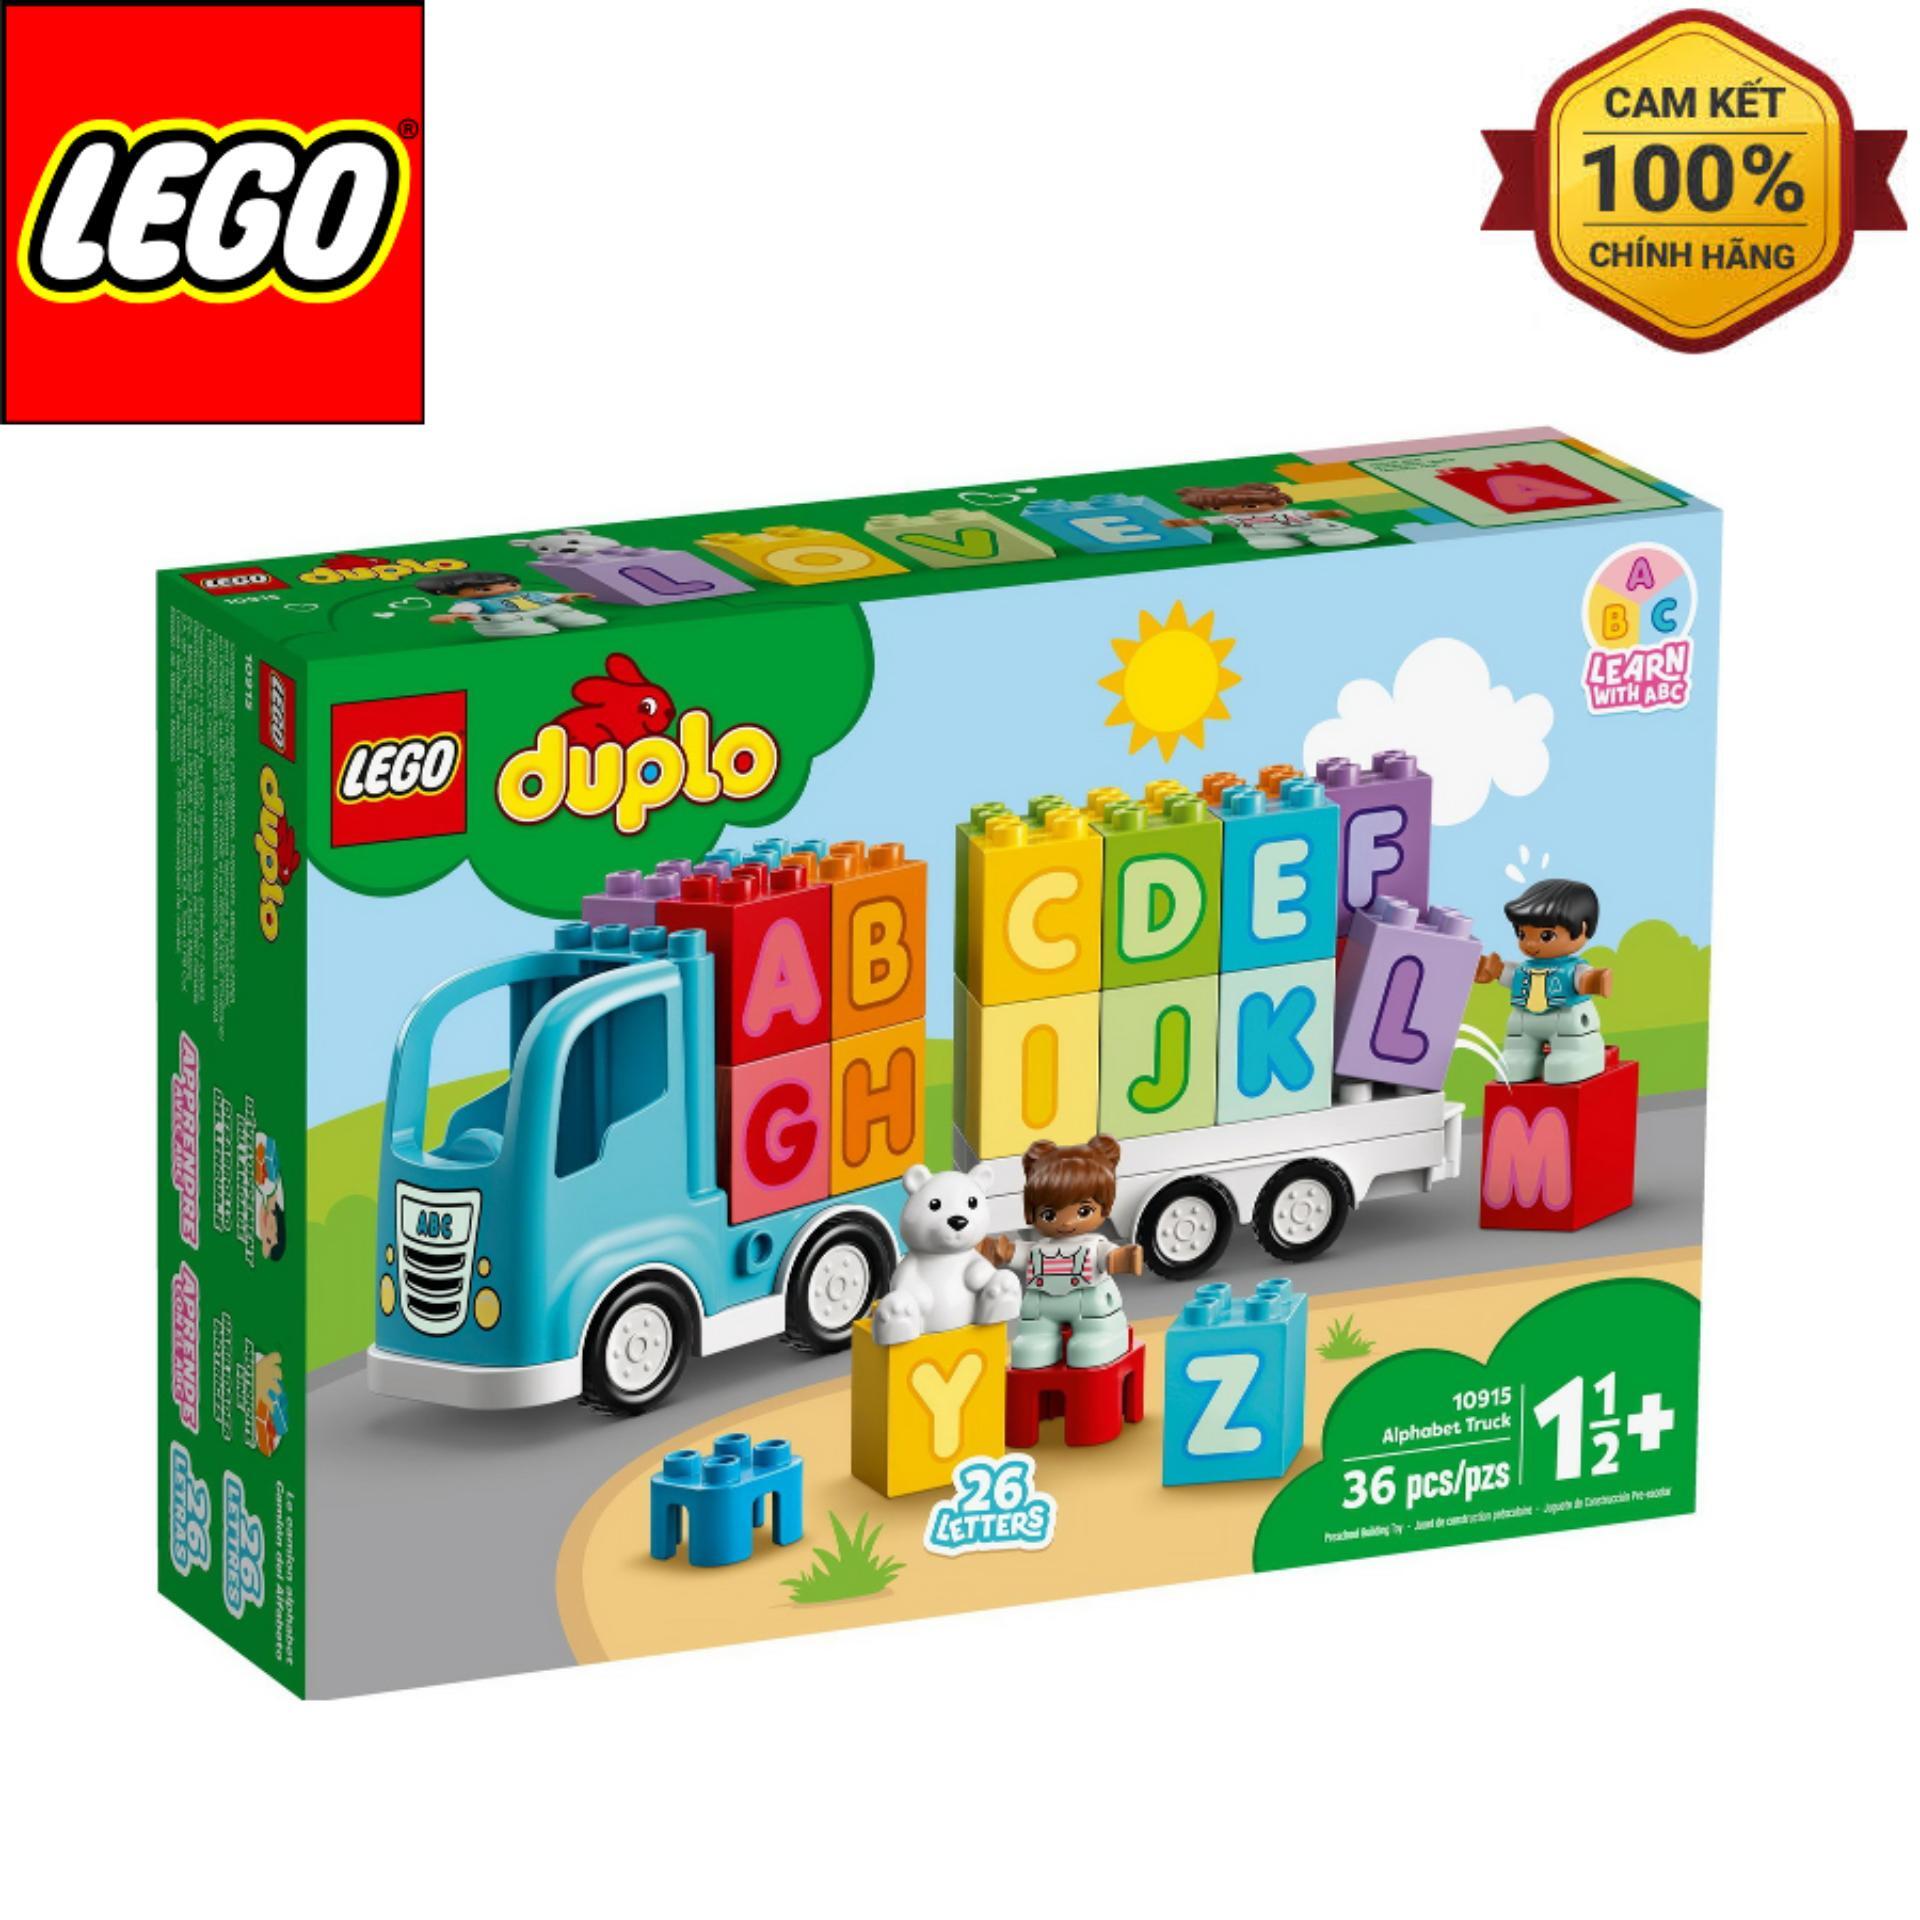 Đồ chơi lắp ráp Lego Duplo 10915 - Đoàn Tàu Học Chữ